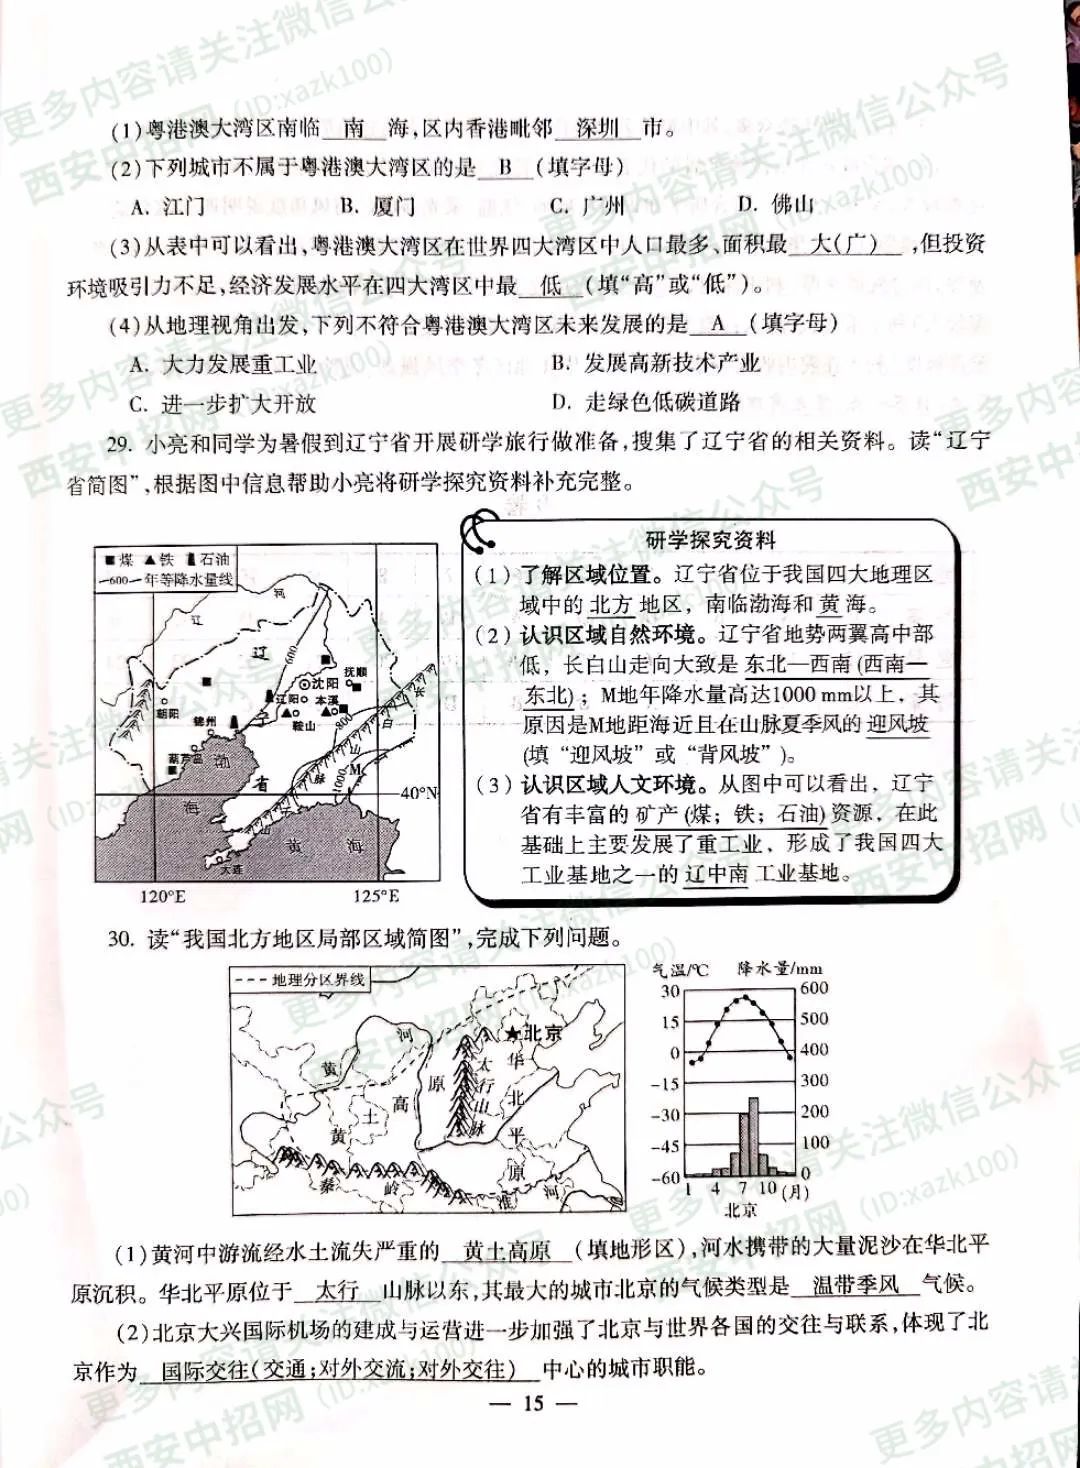 2020年陕西中考《地理》真题及答案已公布